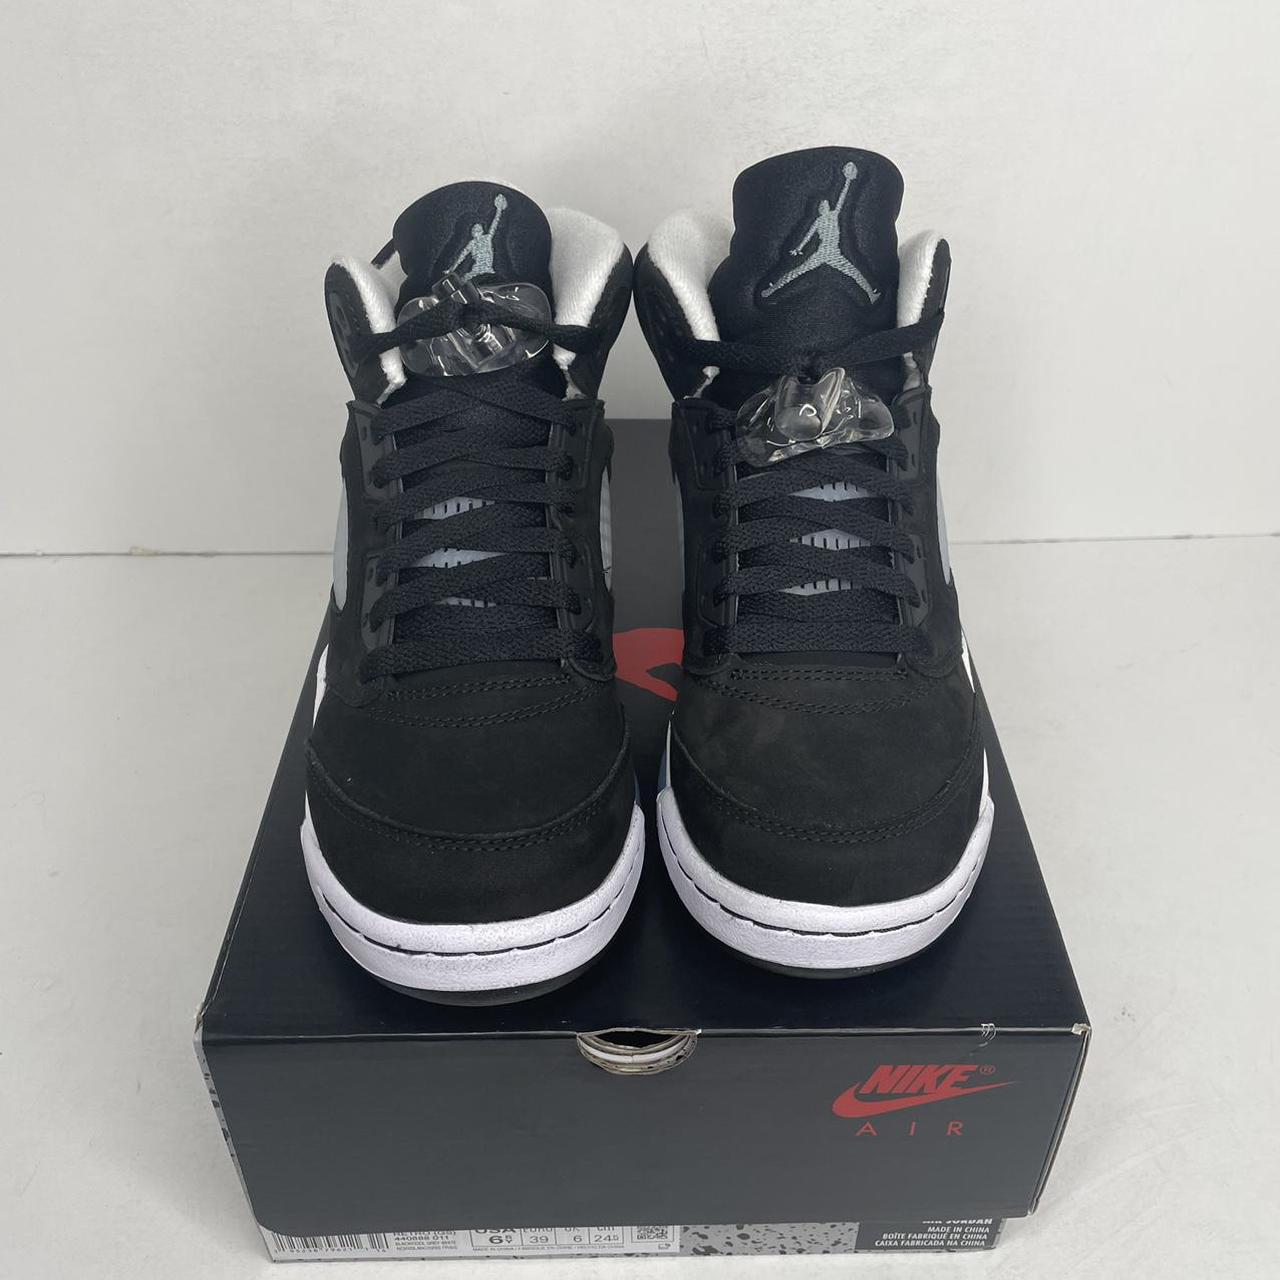 Nike Air Jordan 5 Retro “Oreo/Moonlight” 2021 Black... - Depop